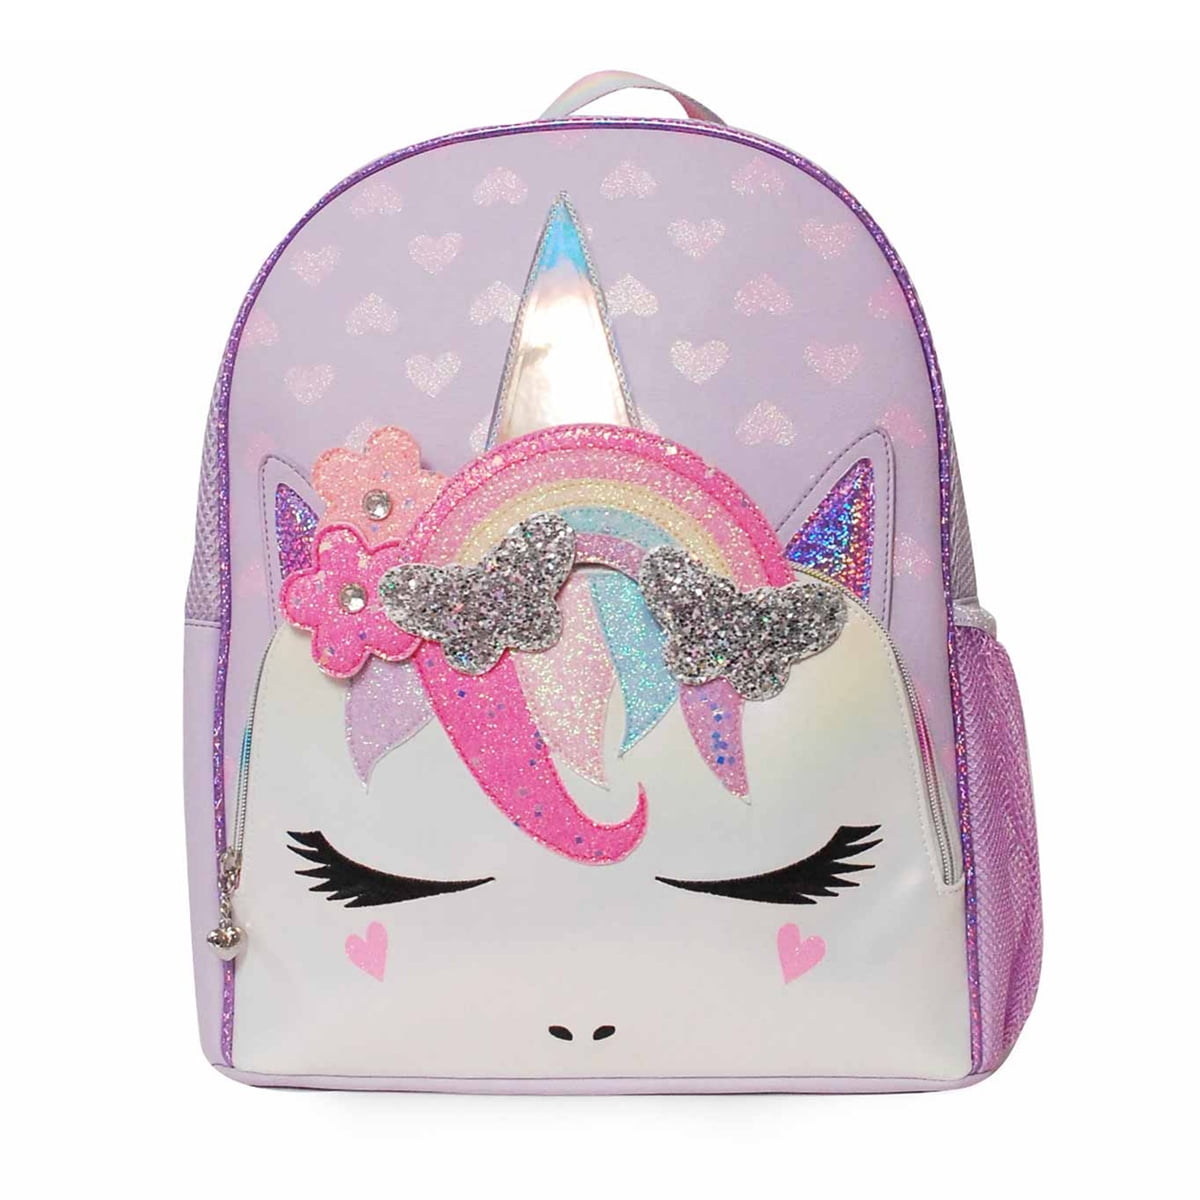 OMG! Accessories Bella Glitter Rainbow Backpack at Von Maur